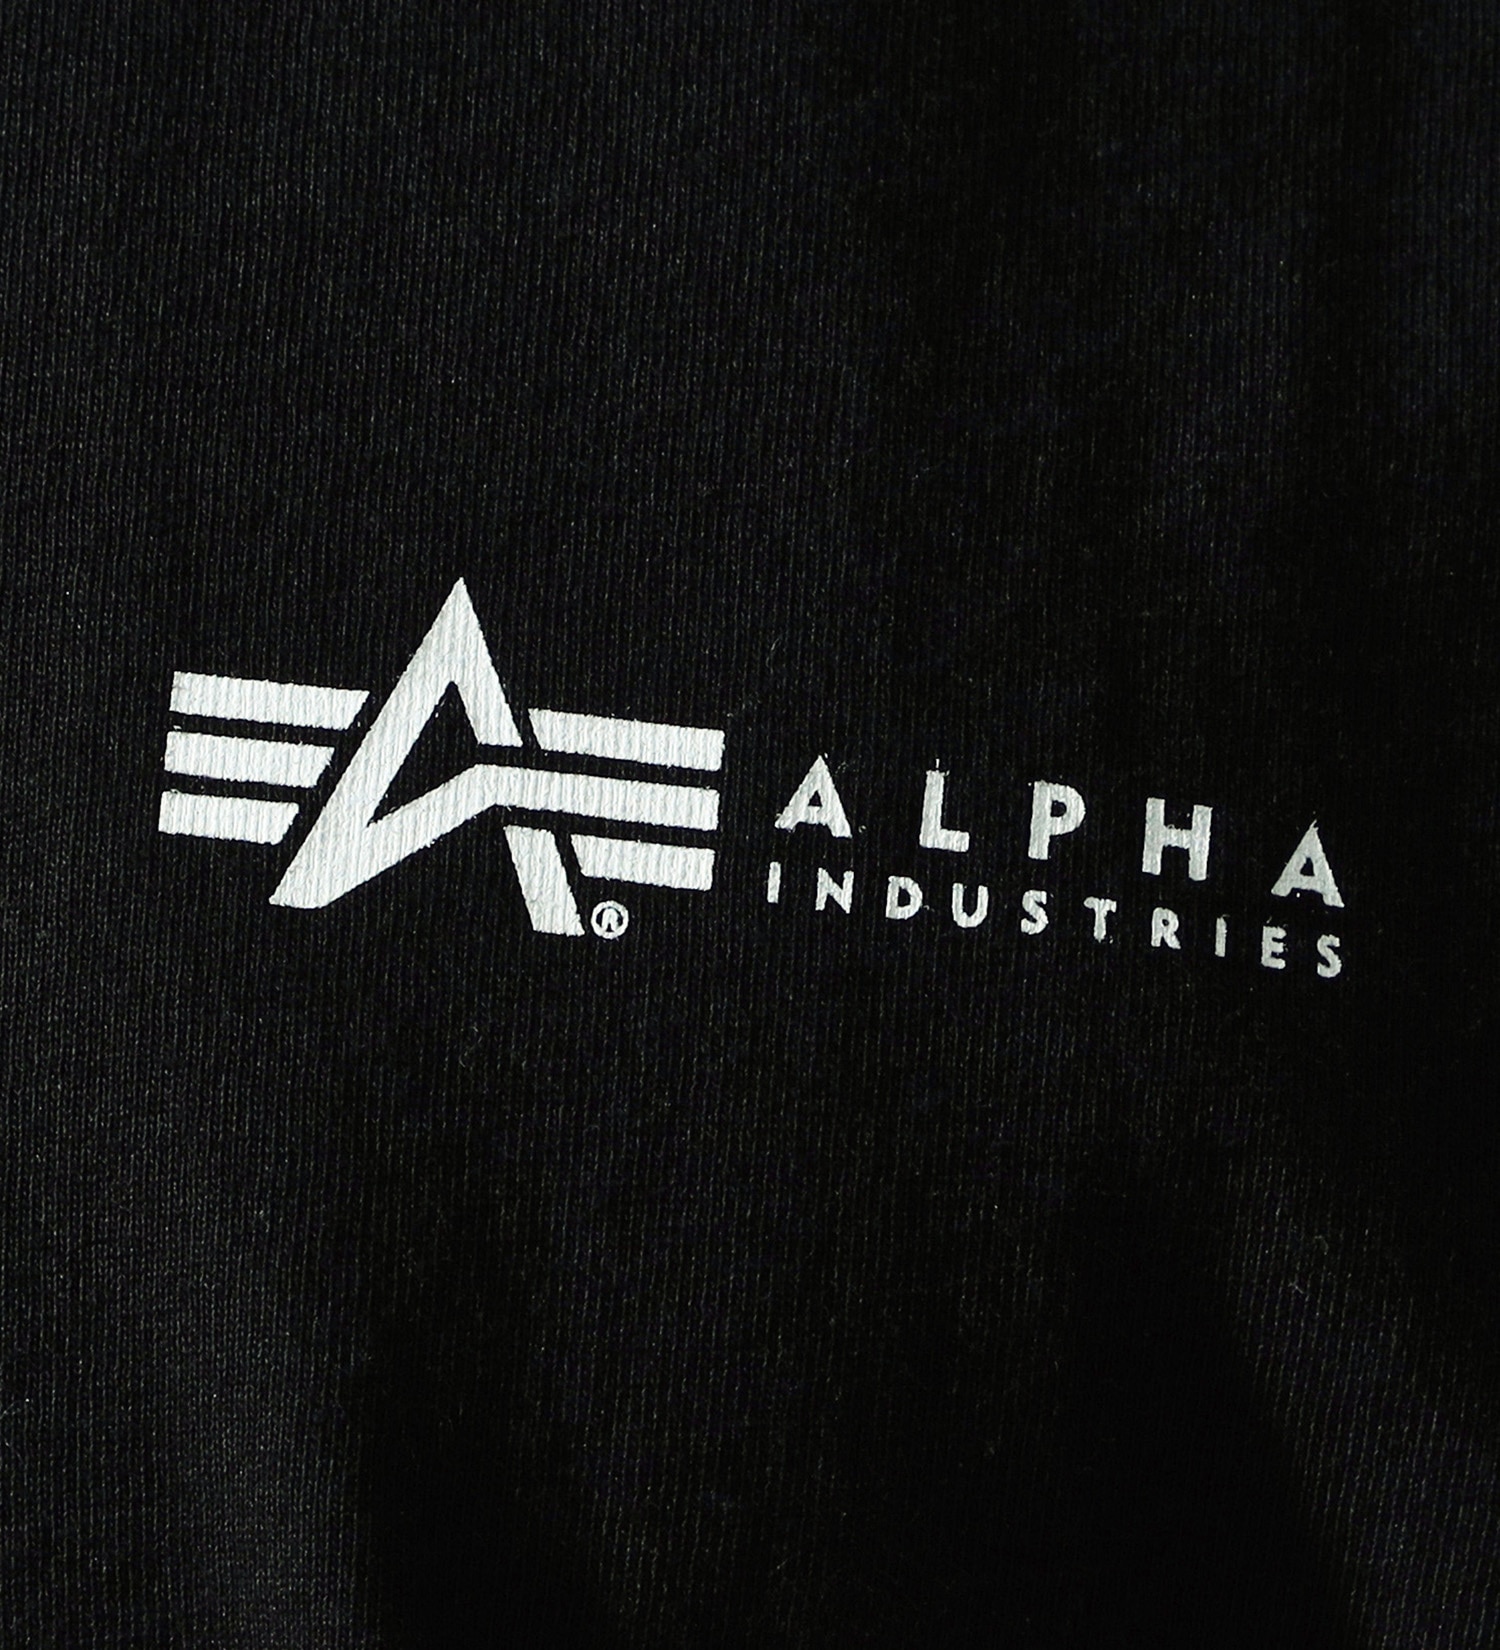 ALPHA(アルファ)のMIL.SPECバックプリントTシャツ 半袖|トップス/Tシャツ/カットソー/メンズ|ブラック